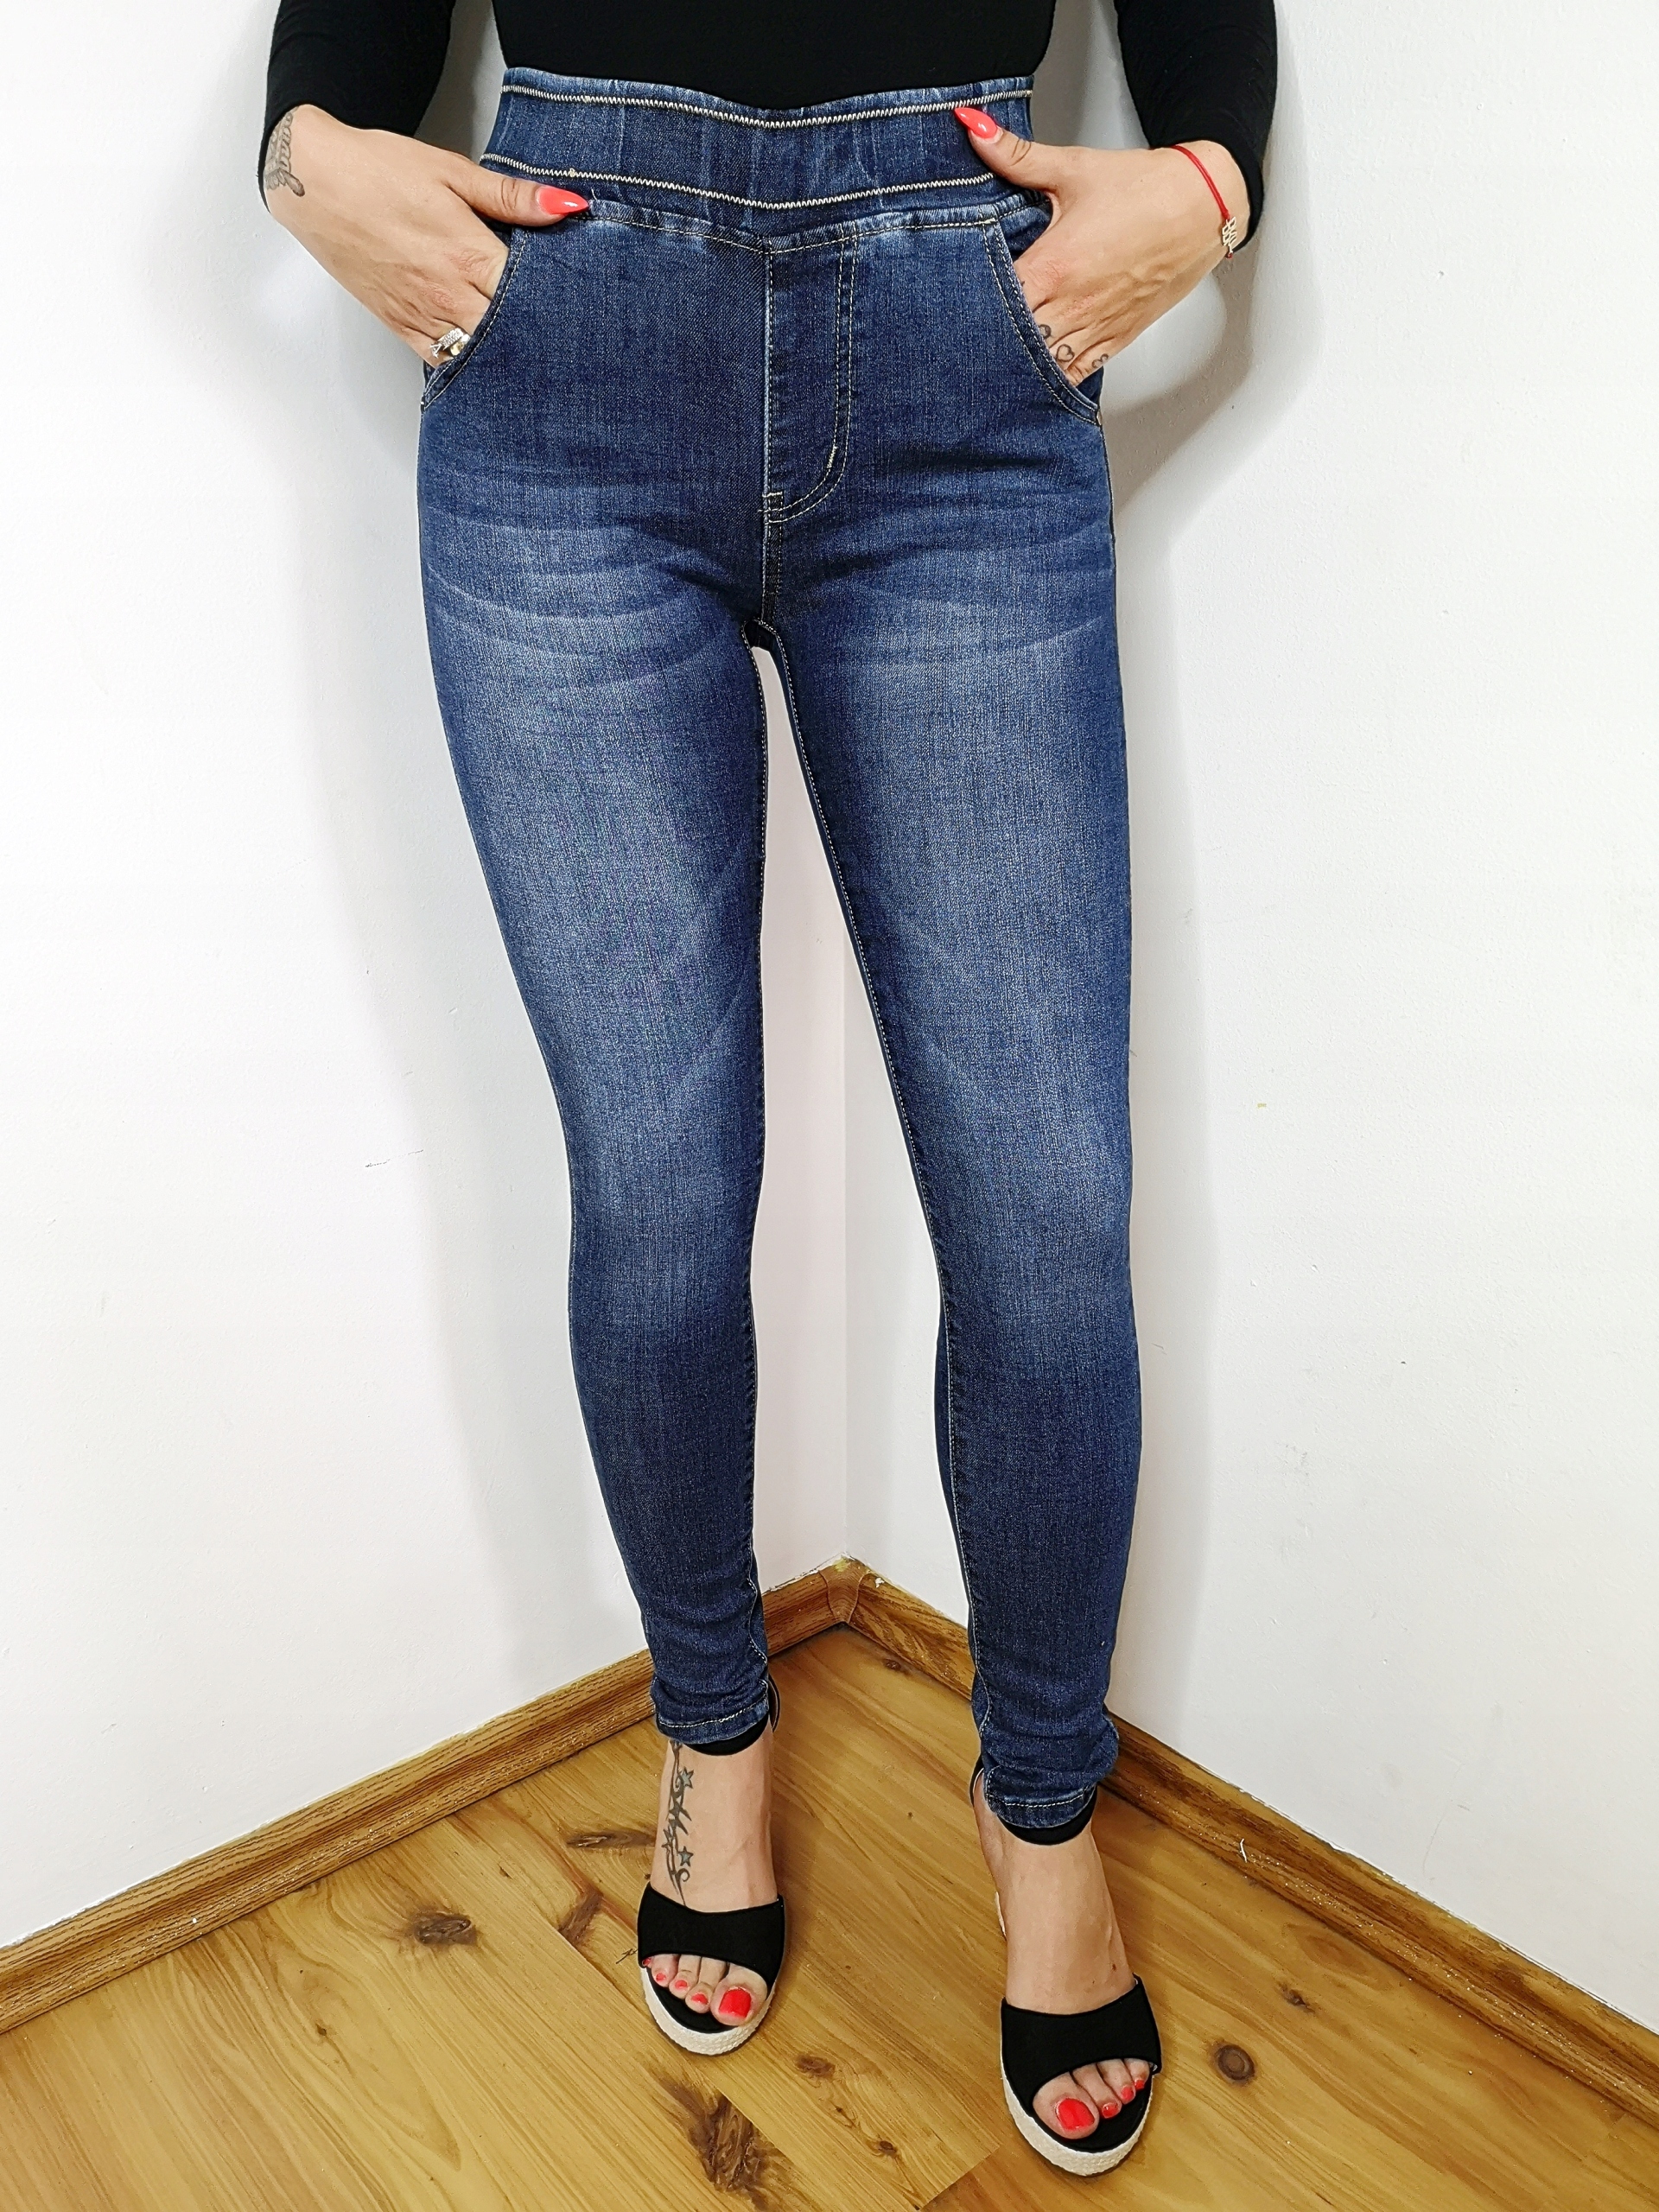 Брюки женские джинсовые на резинке Tregginsy Weight (with packaging) 0.3 kg